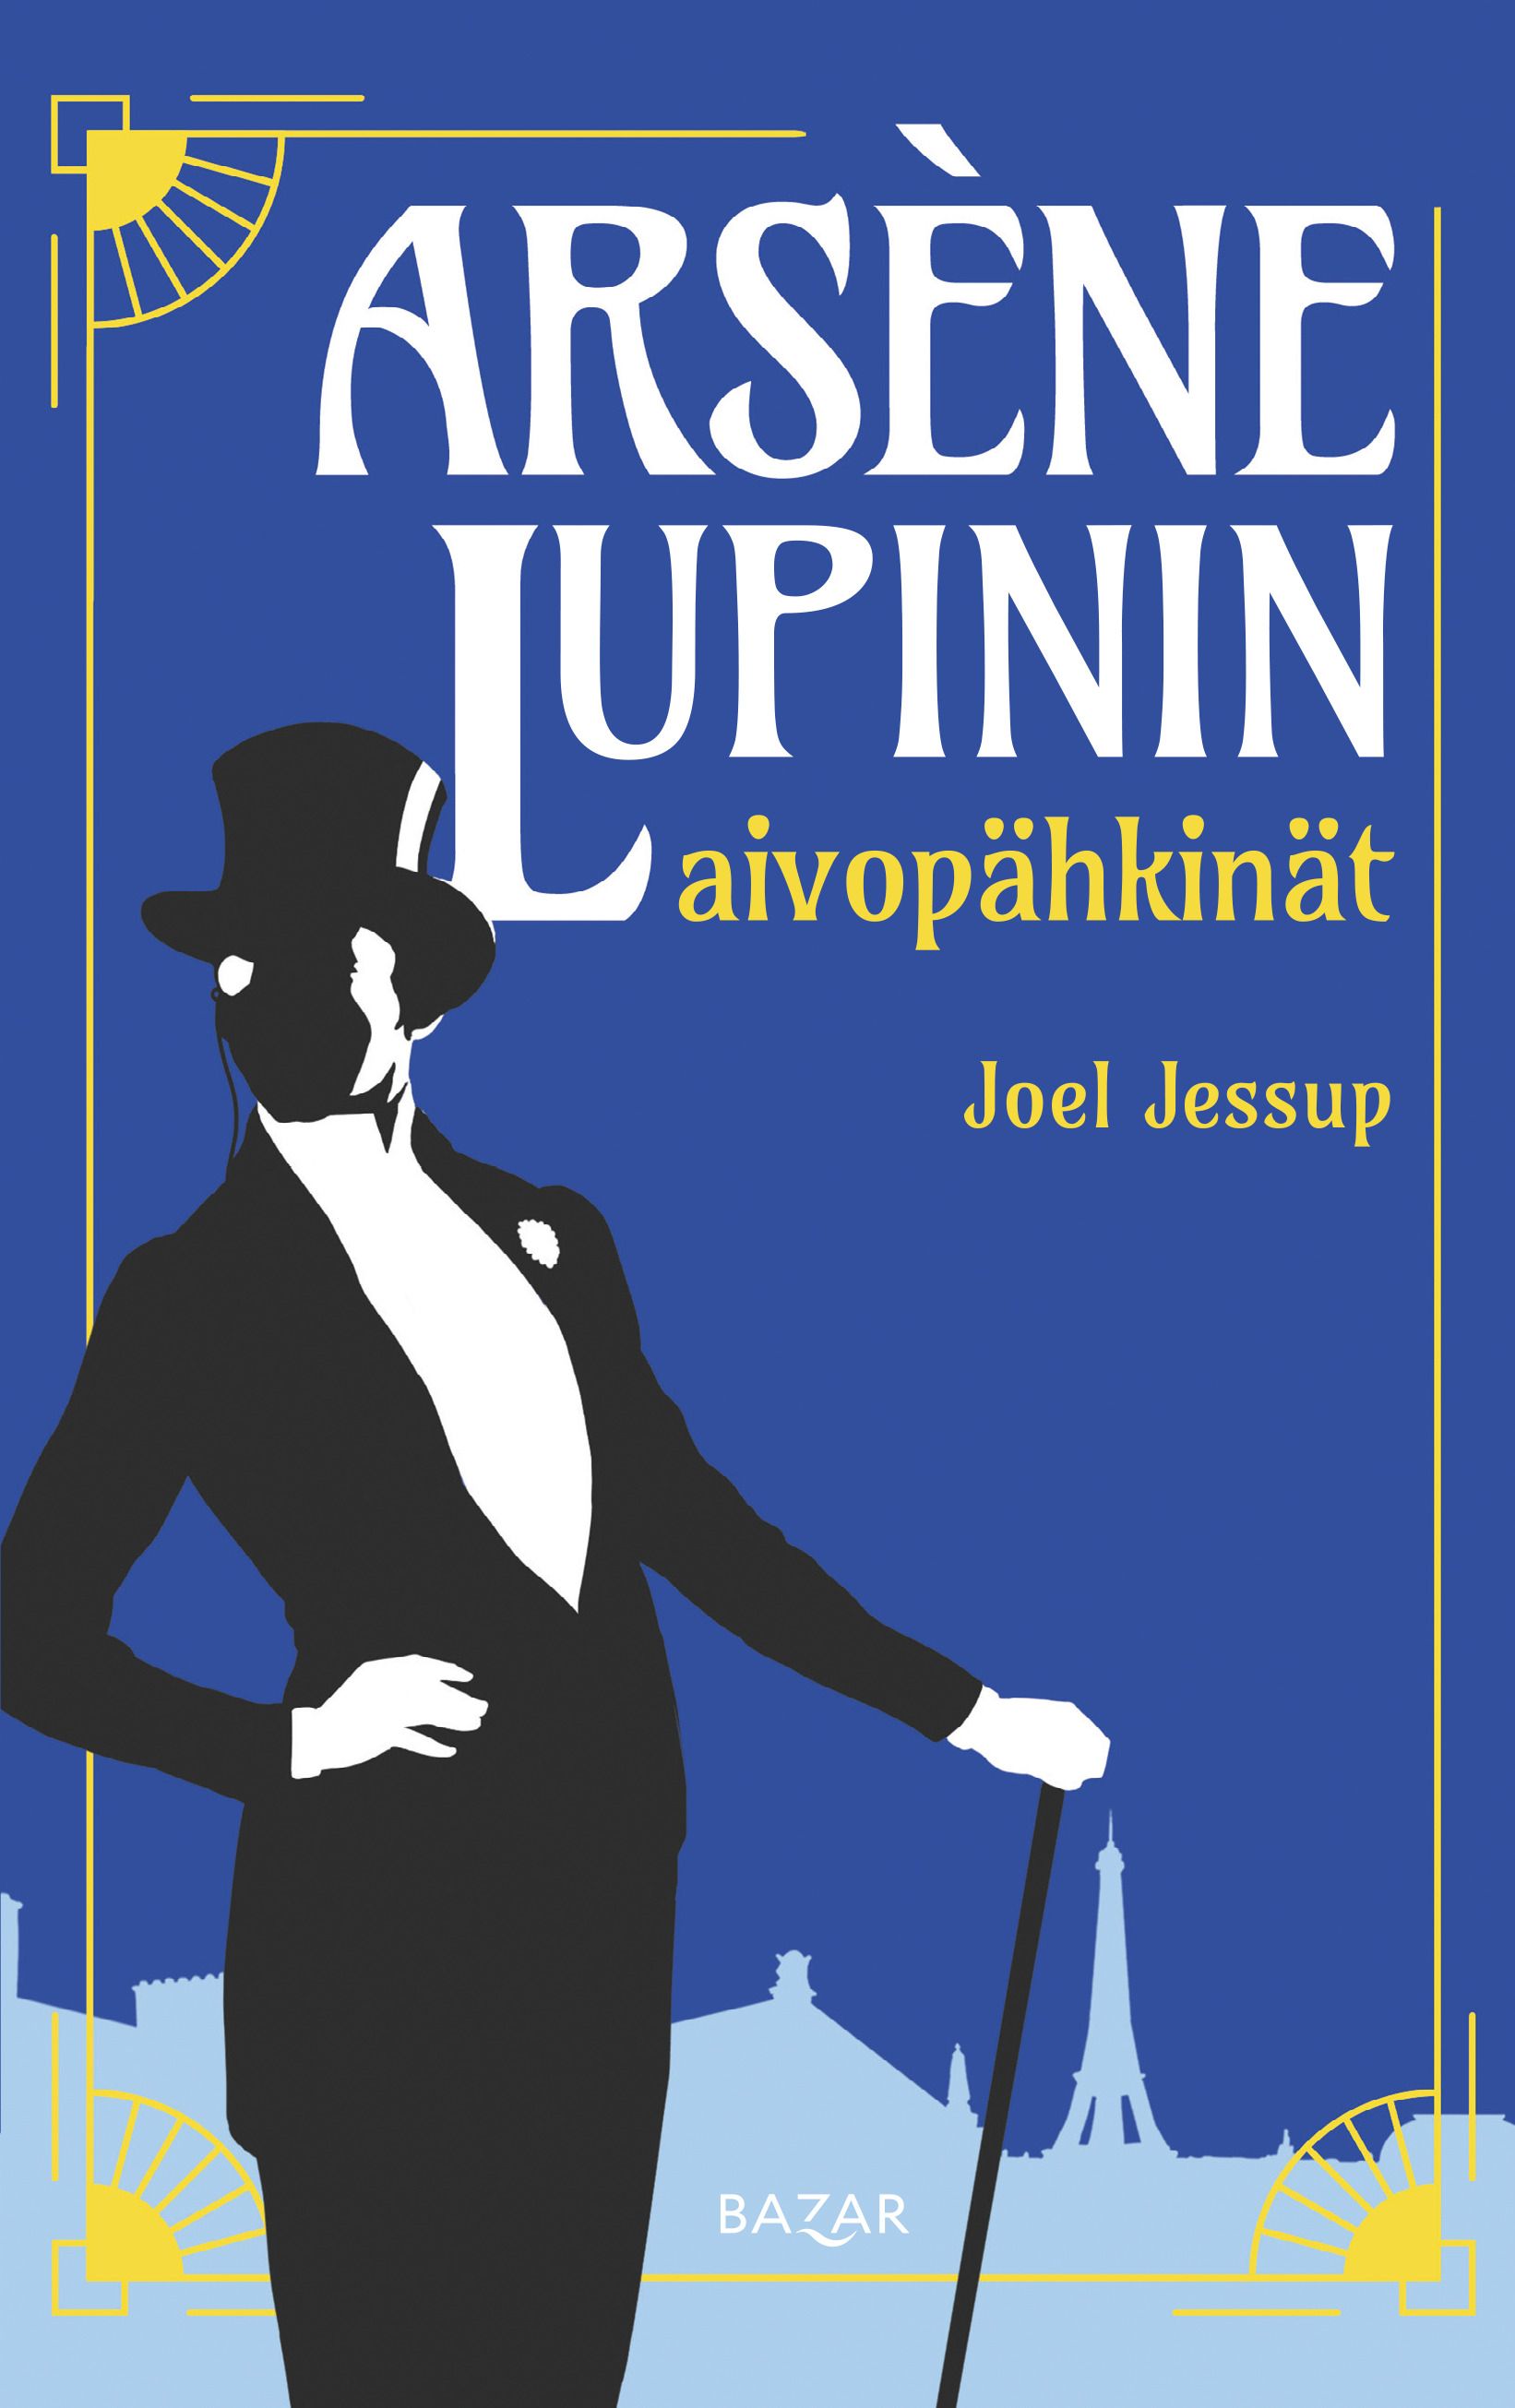 Joel Jessup : Arsène Lupinin aivopähkinät